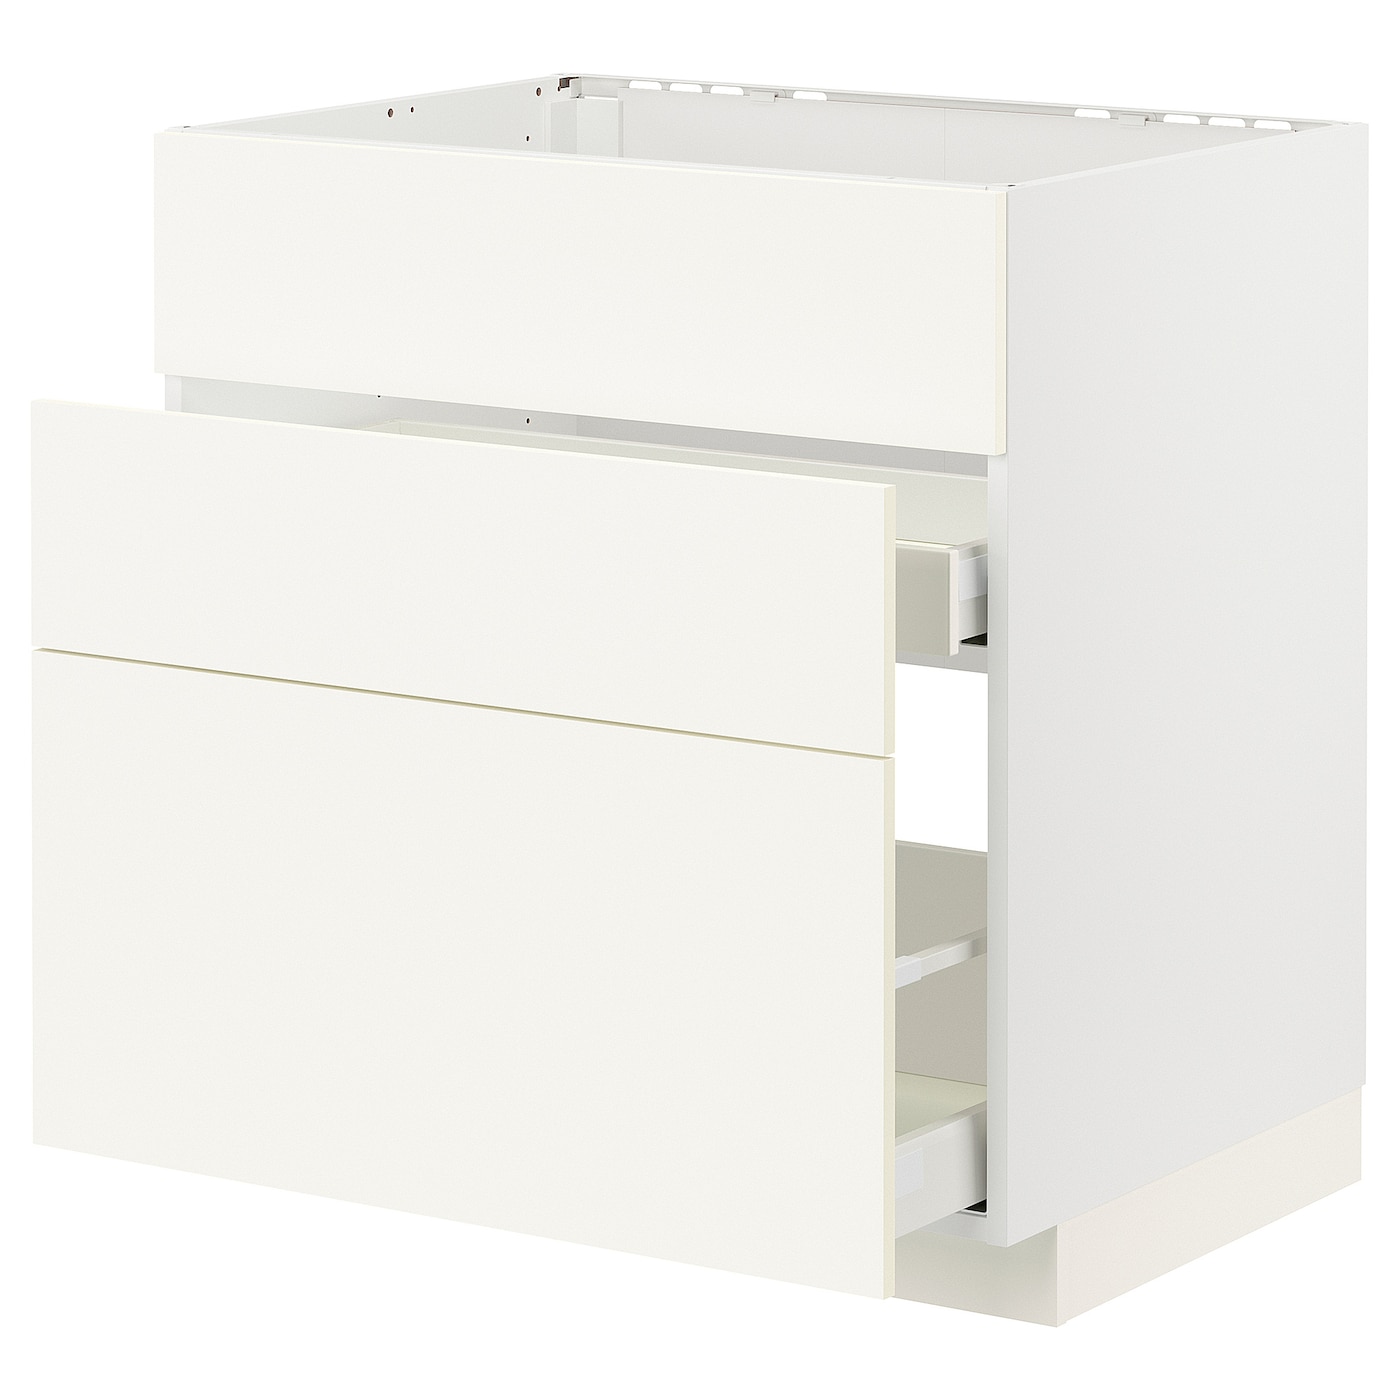 Напольный кухонный шкаф  - IKEA METOD MAXIMERA, 88x61,6x80см, белый, МЕТОД МАКСИМЕРА ИКЕА